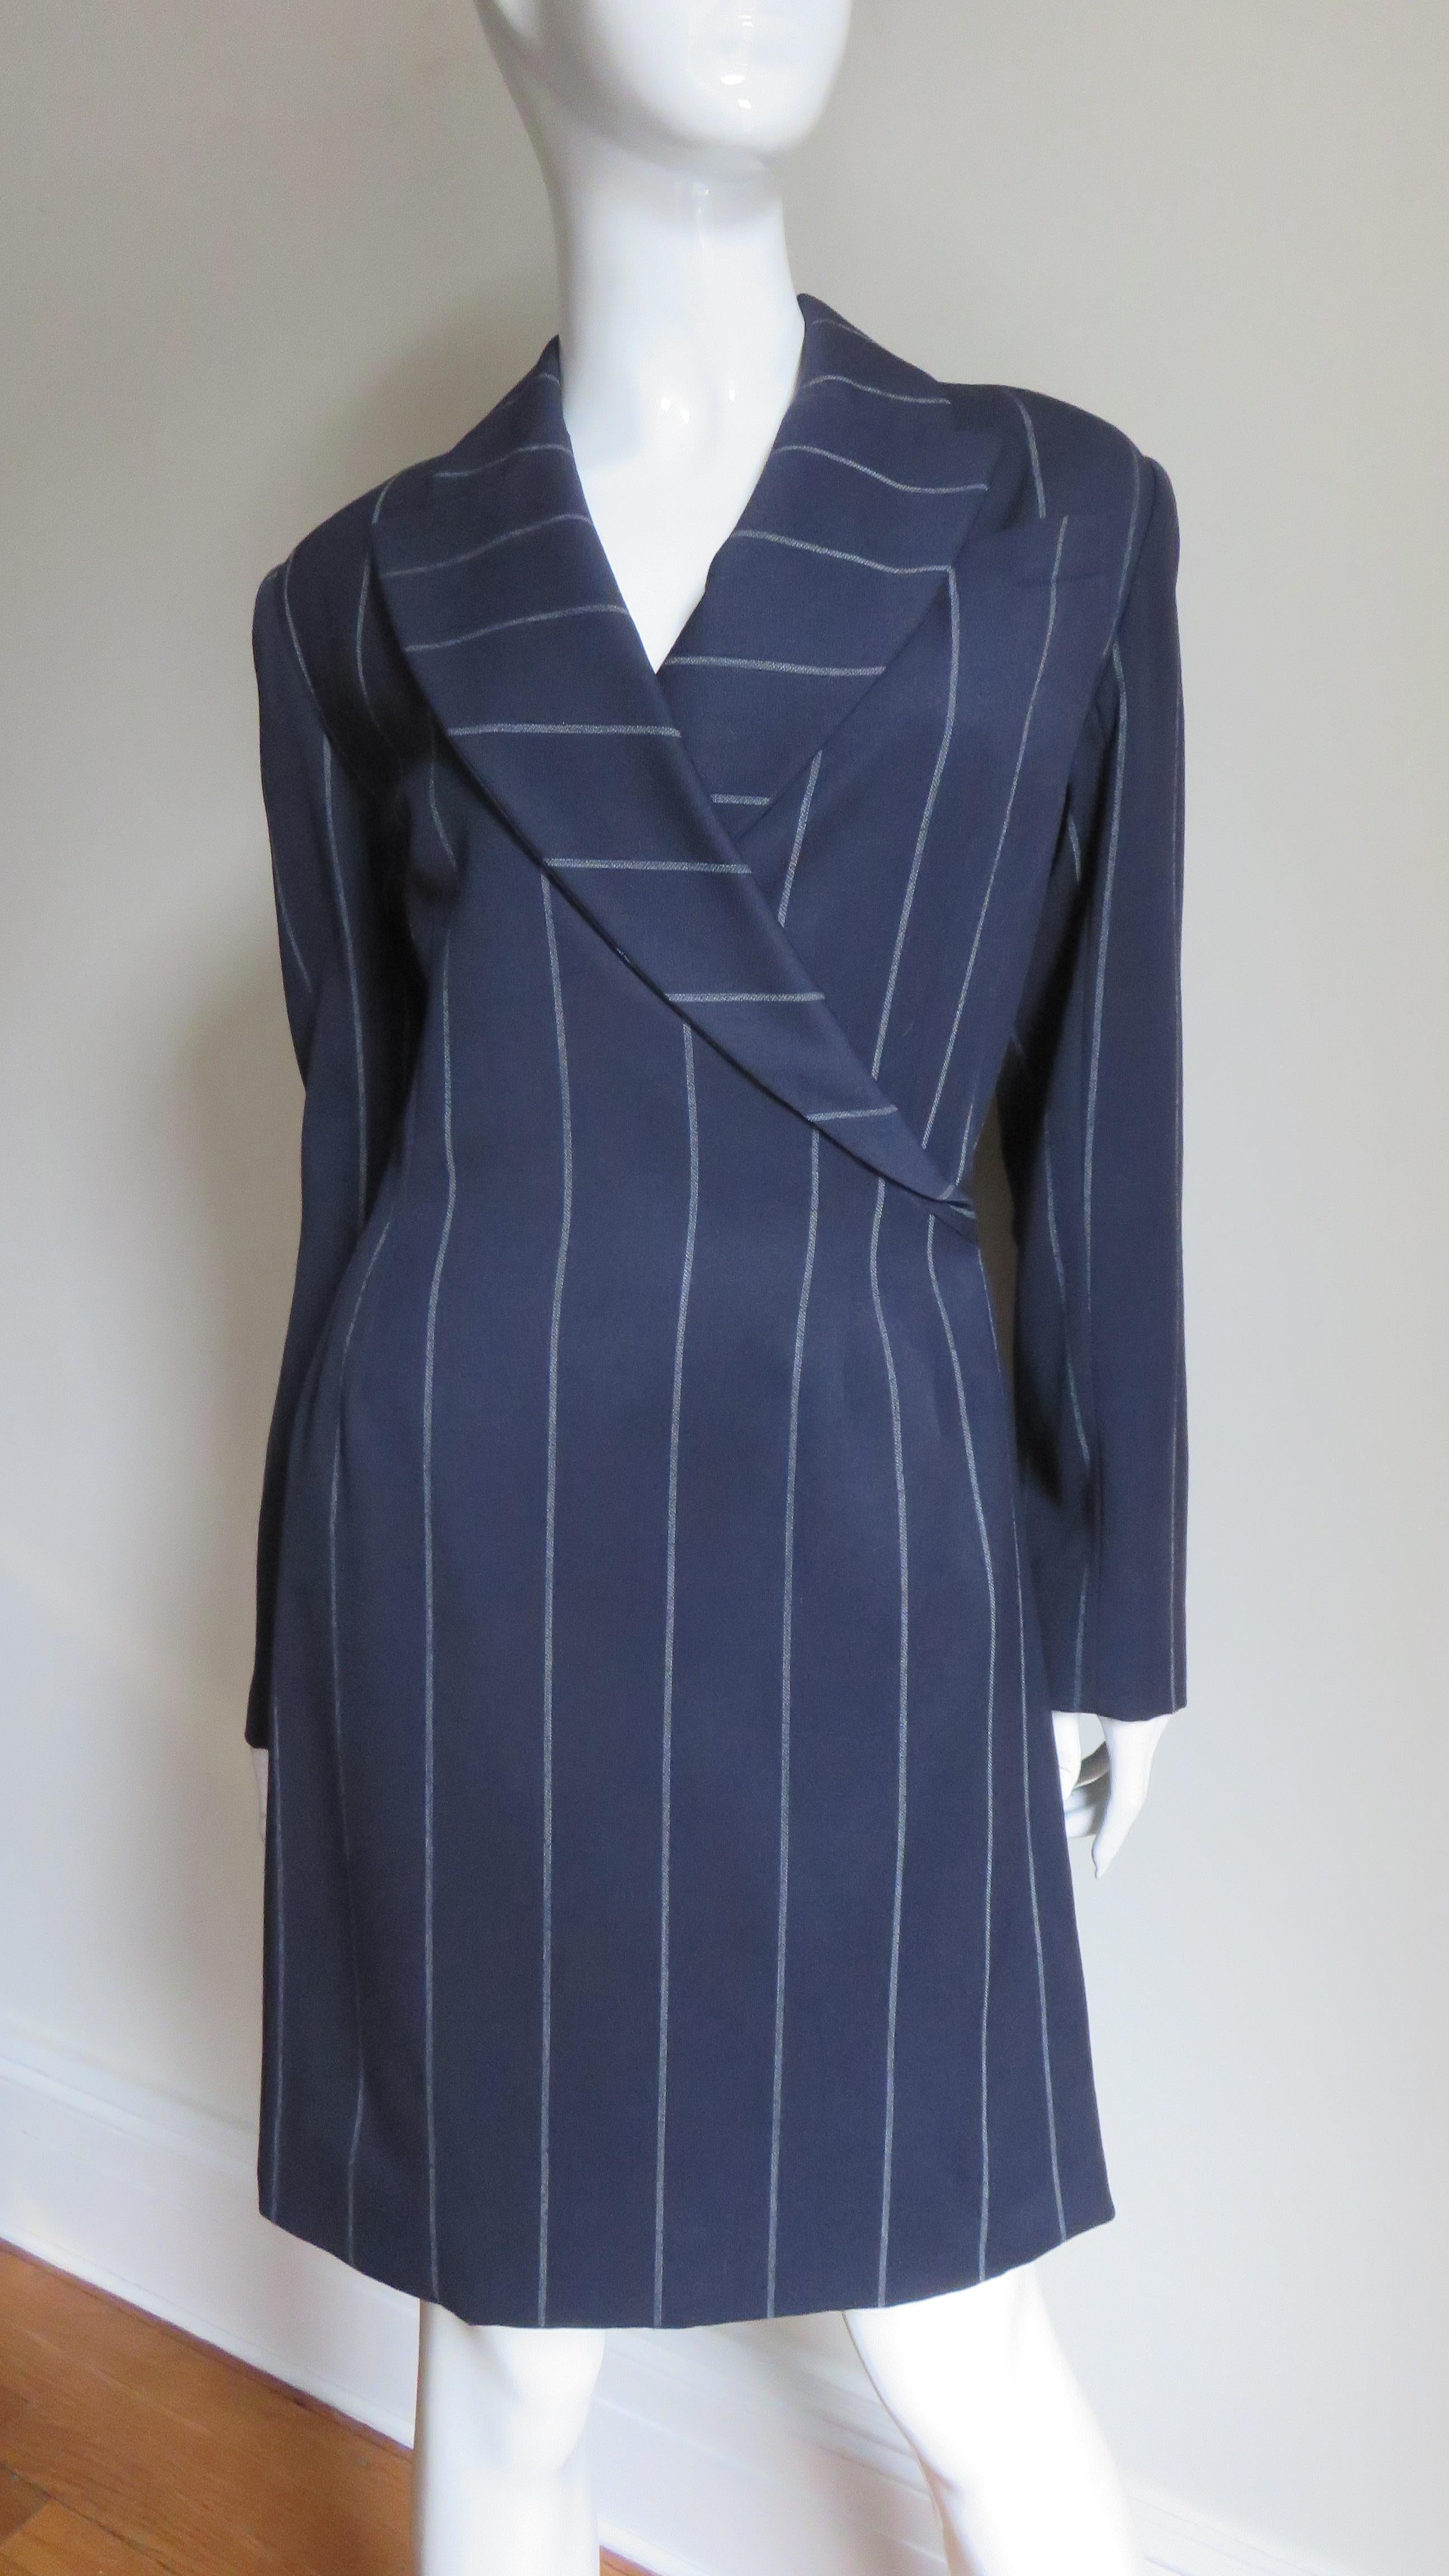 Une superbe robe en laine bleu marine à rayures écrues de Herve Leger.  La robe semi-ajustée de style cache-cœur est dotée d'une poche poitrine, de revers en pointe et d'une double fente au-dessus d'une simple fente dans le dos de la jupe pour lui